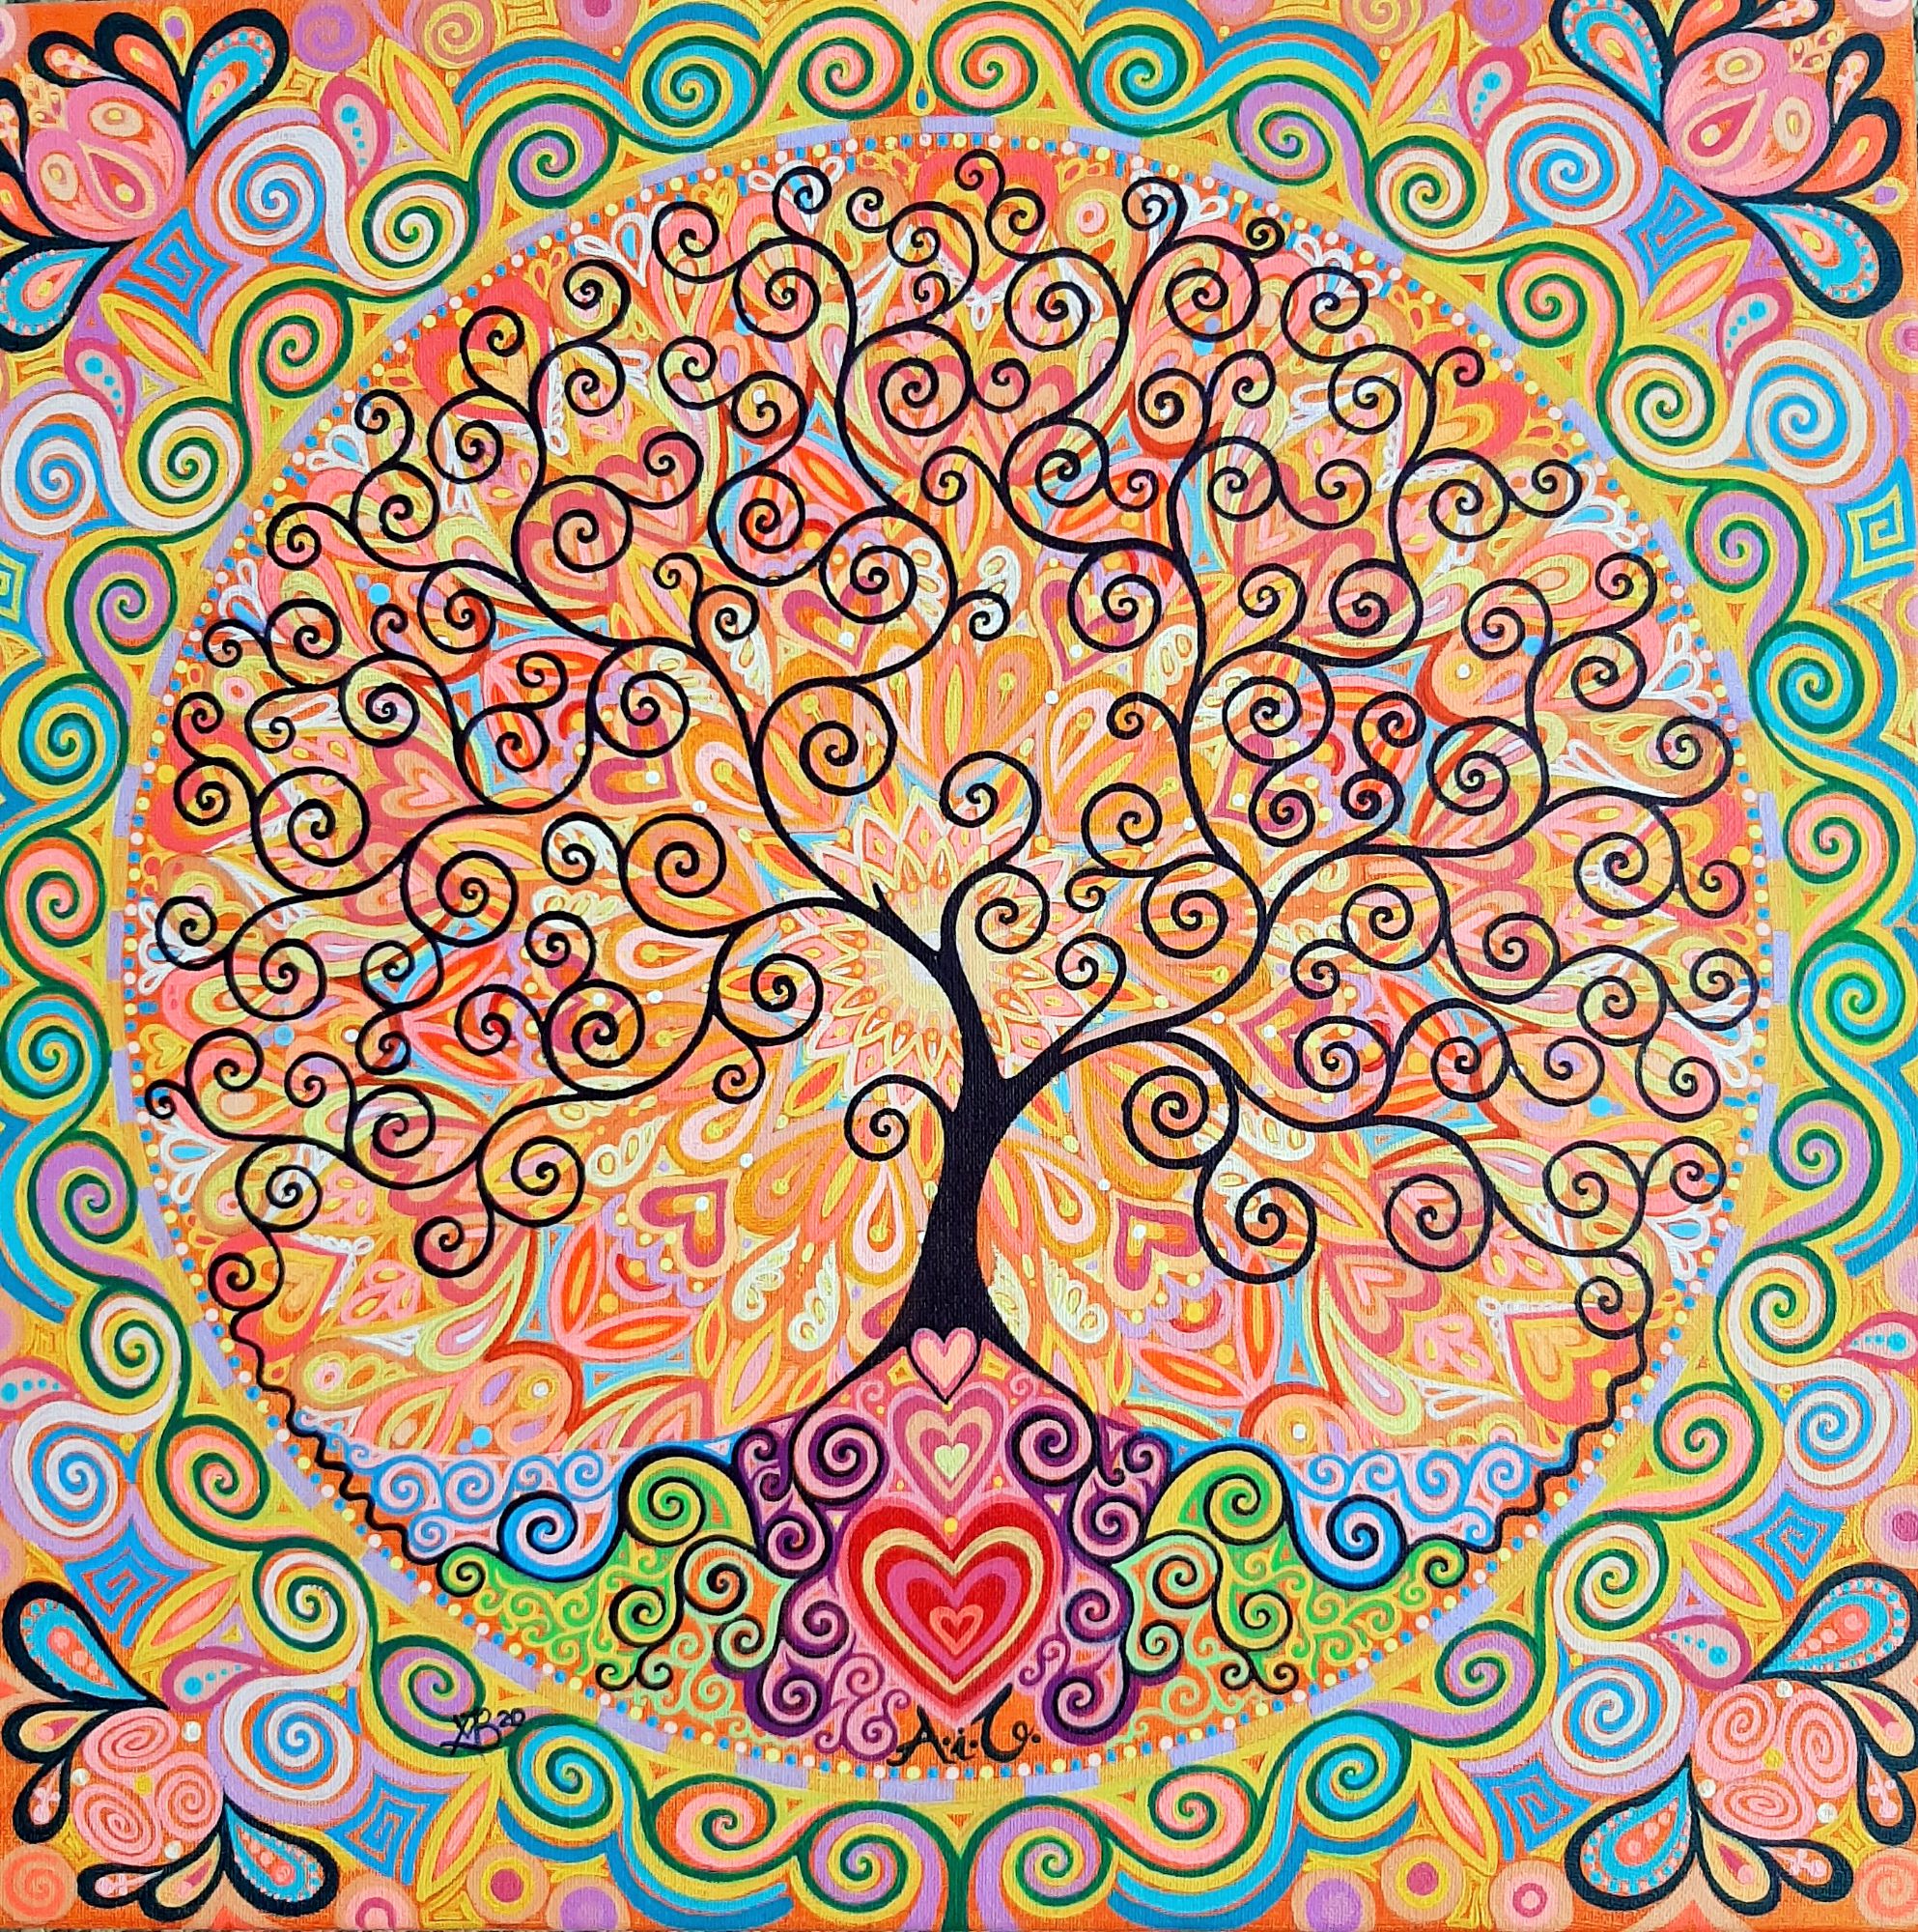 Tree of Life & Hearts Mandala